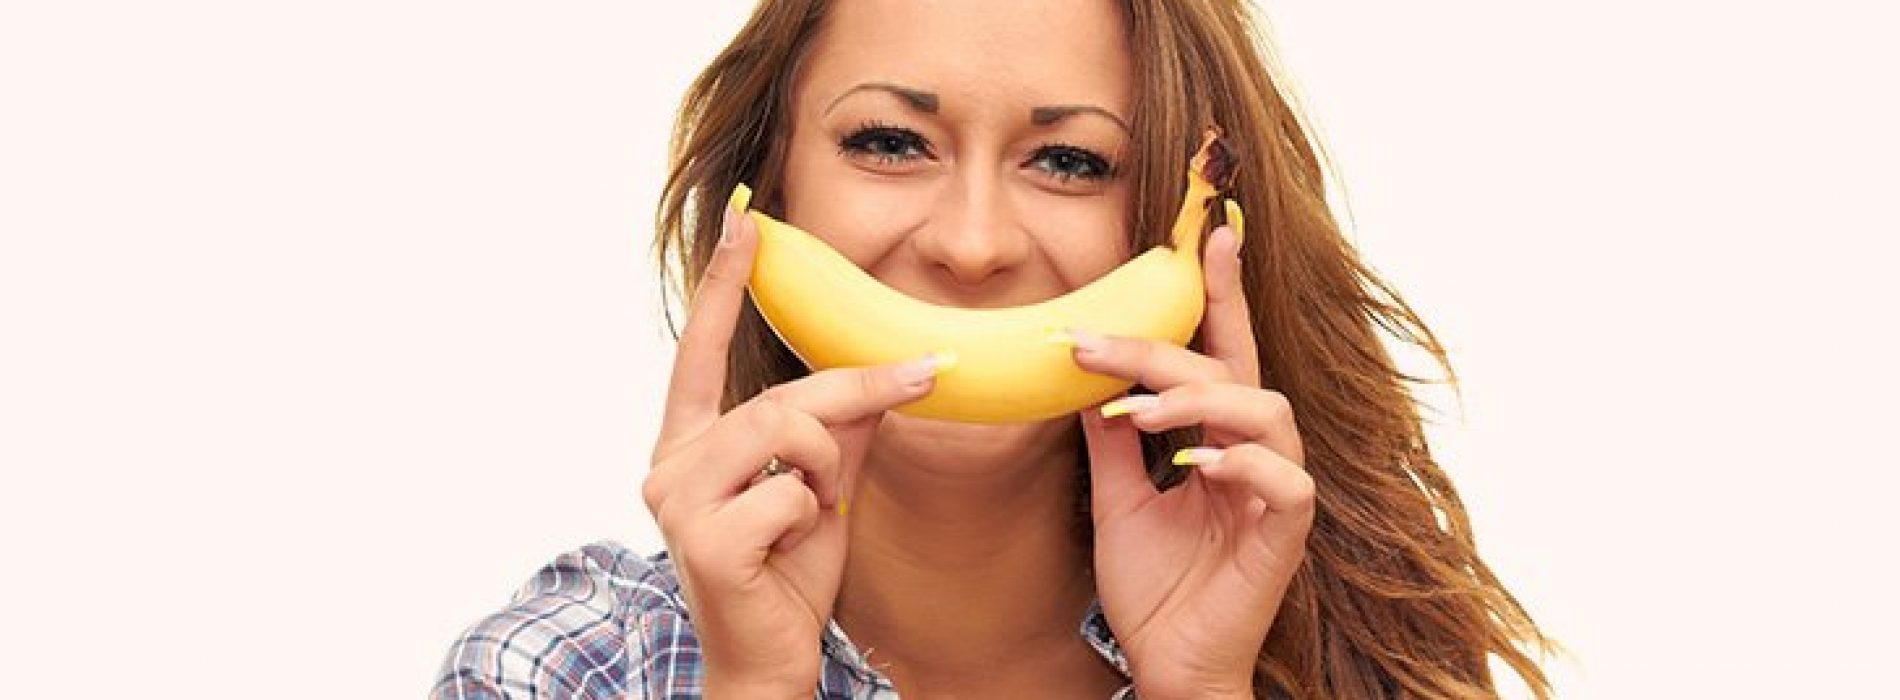 Pak een stel bananen en geniet van deze 9 gezondheidsvoordelen